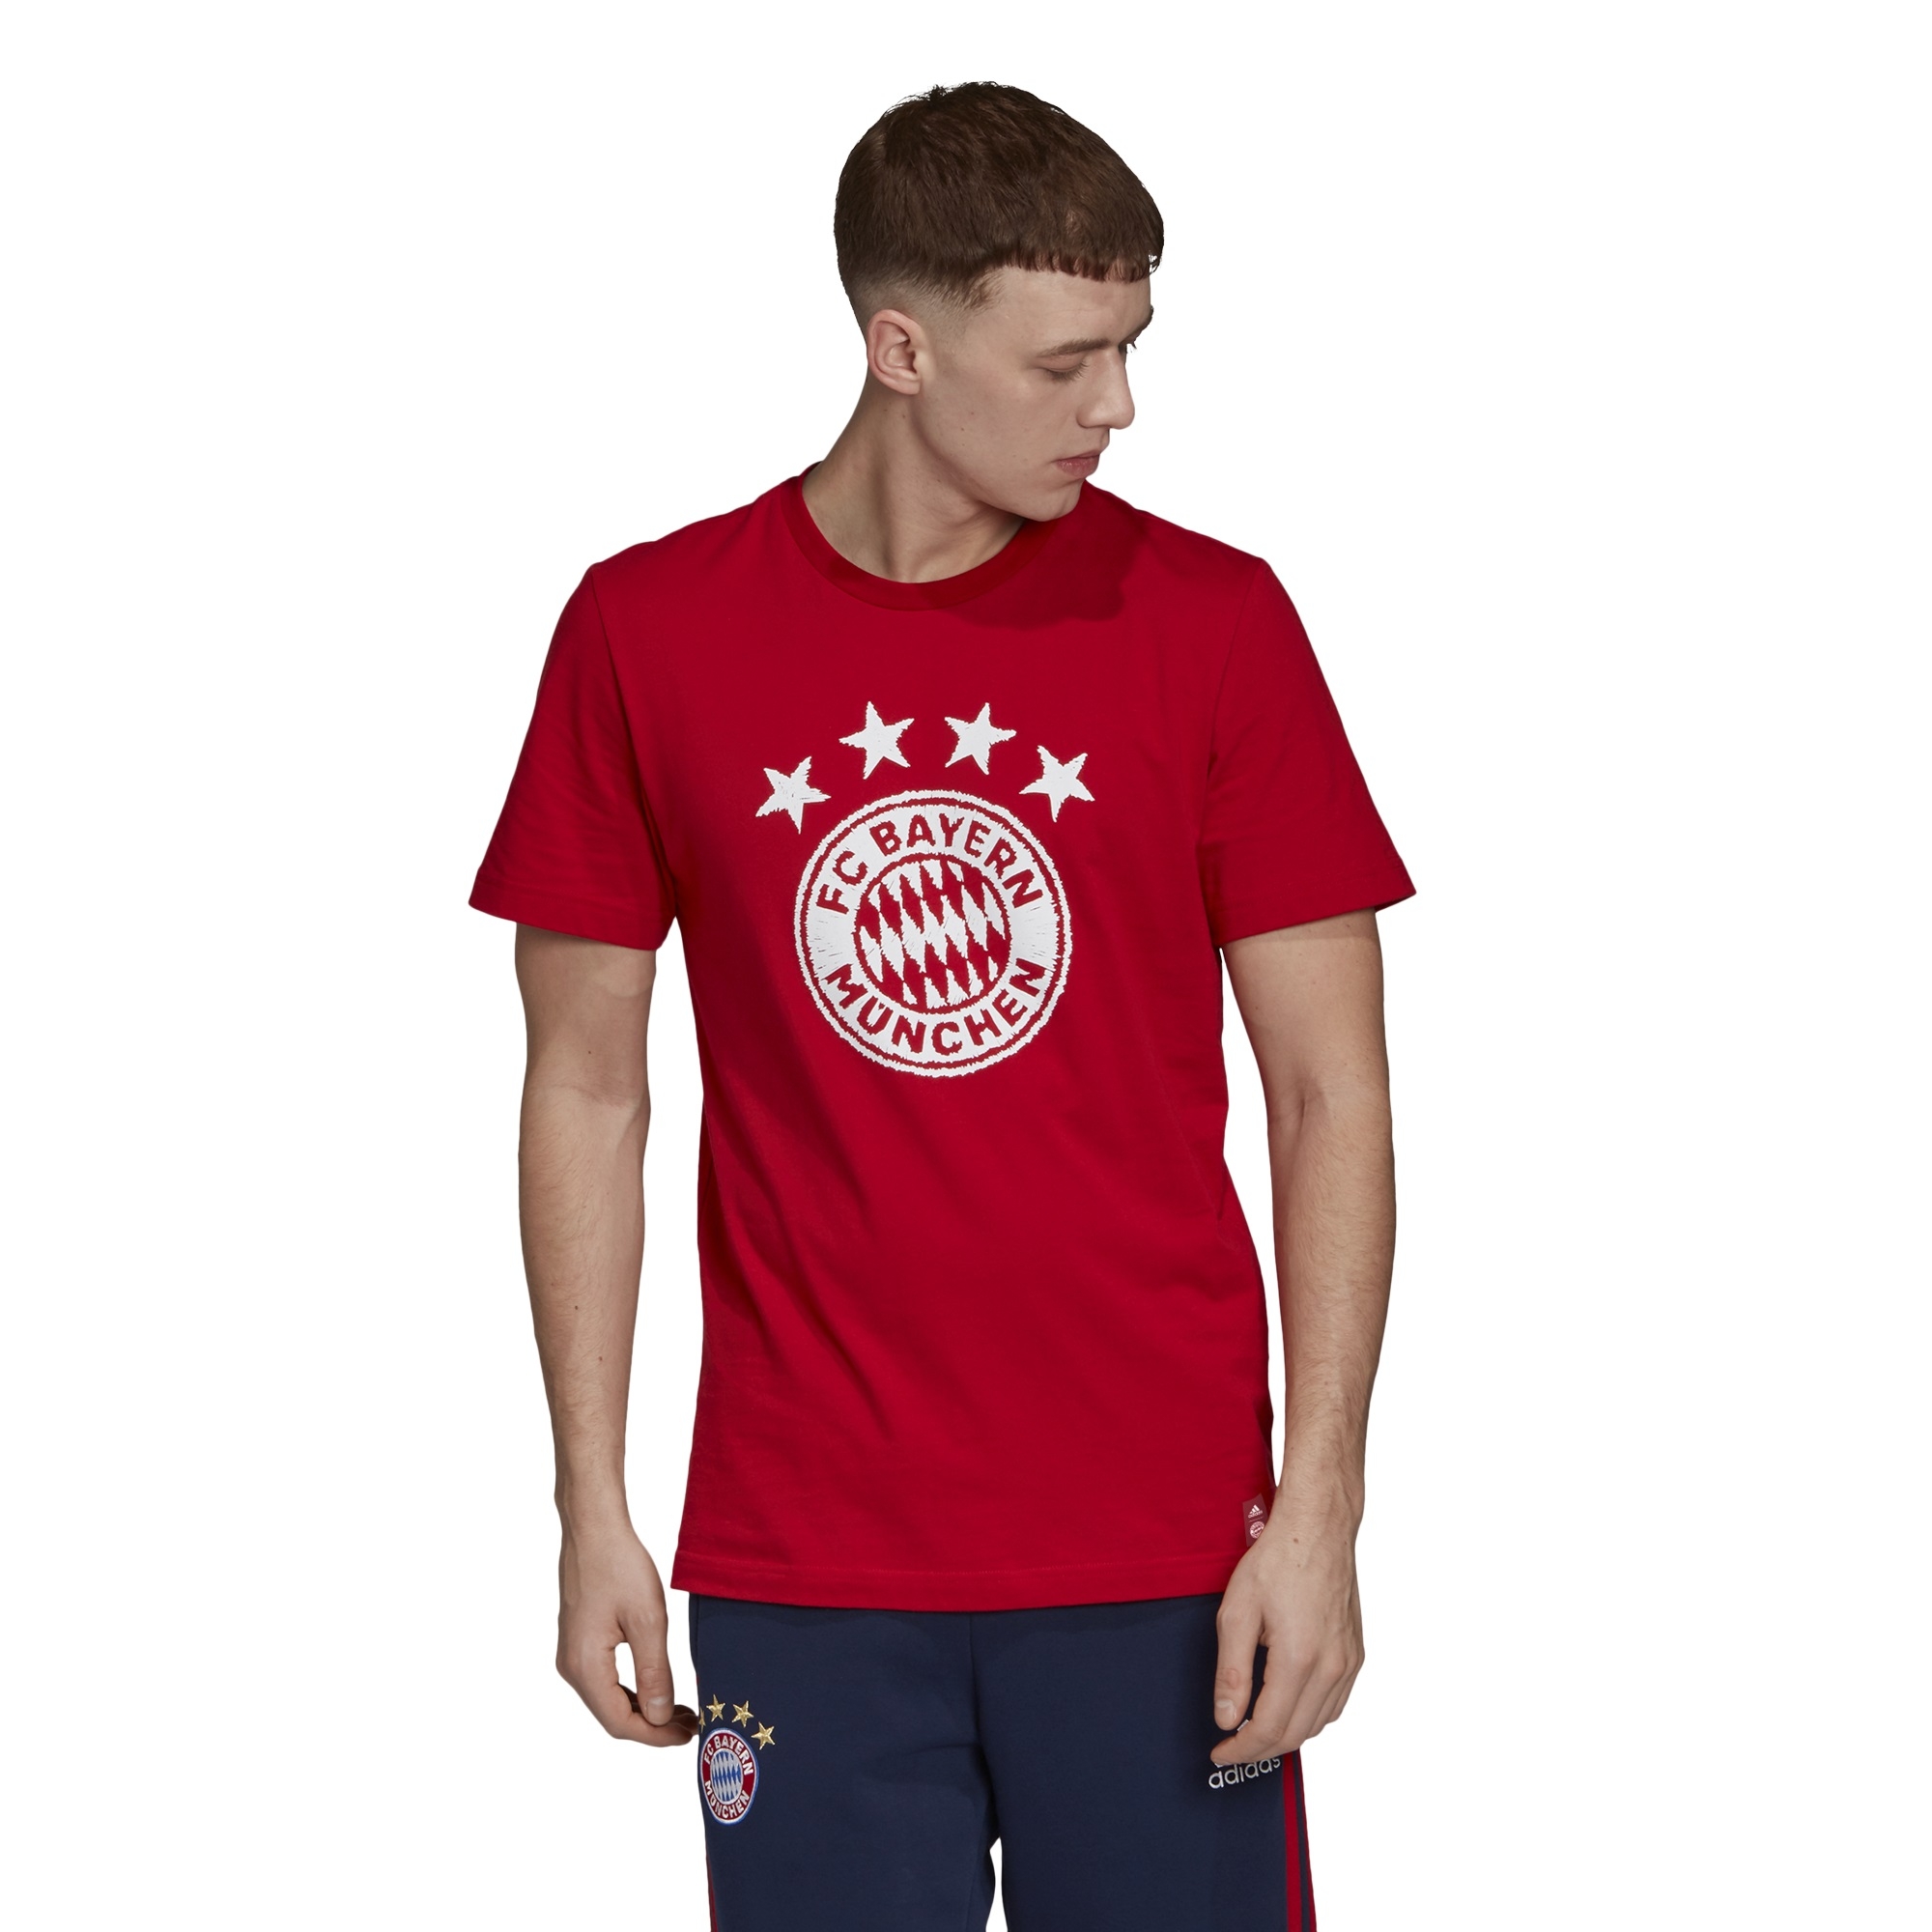 Maglia Bayern Monaco personalizzata ufficiale 2020 2019 adulto bambino tuo nome 